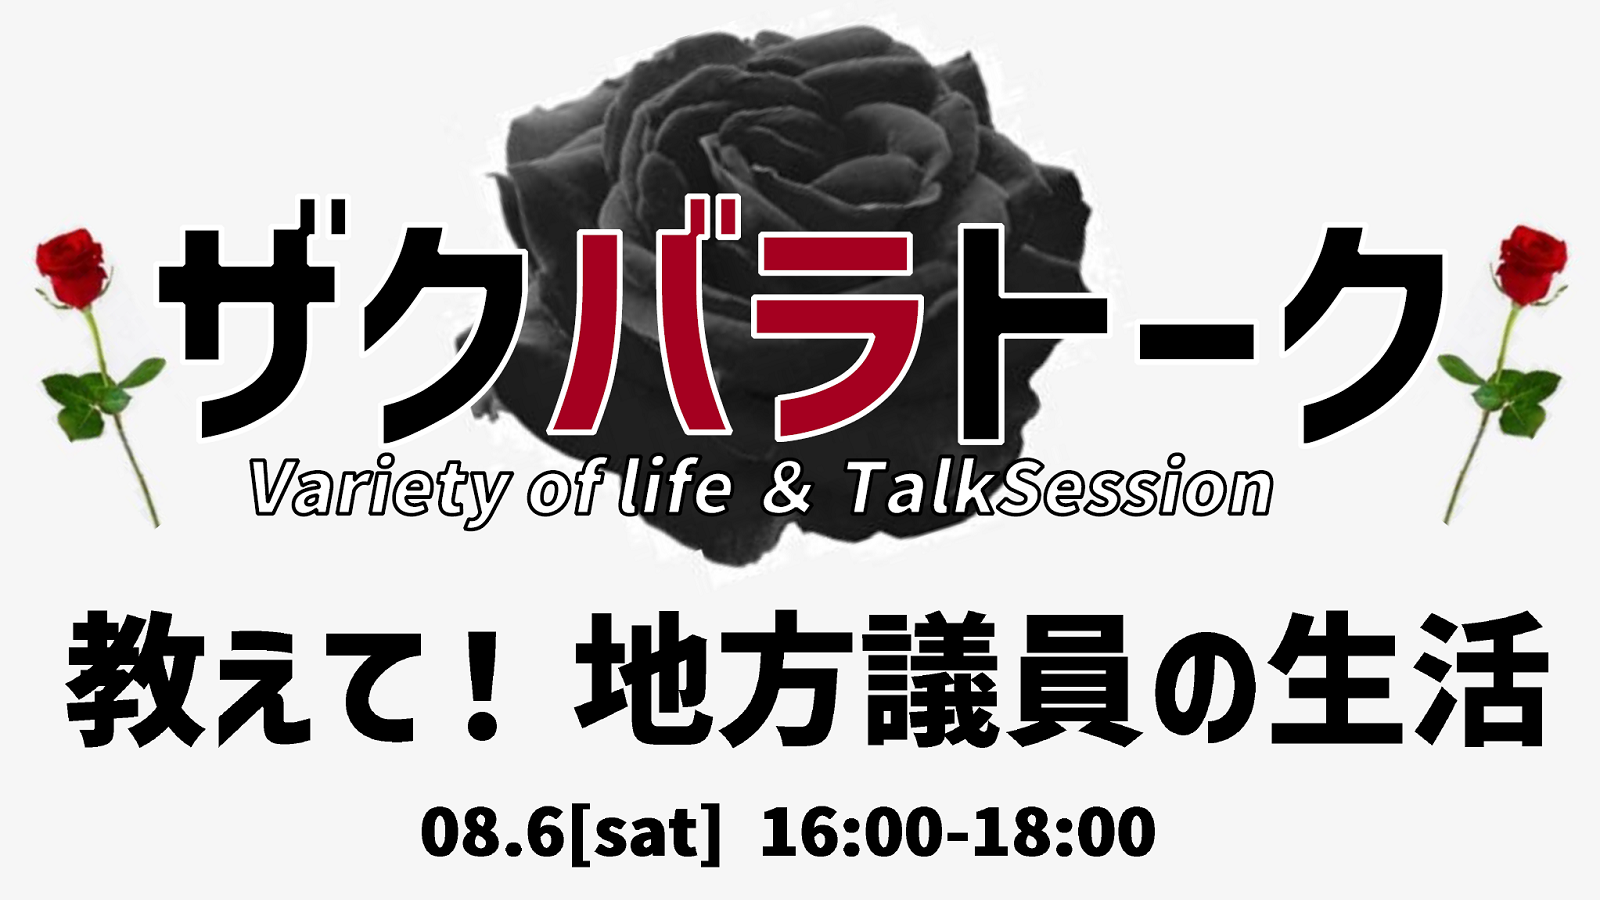 ザクバラトーク -Variety of Life＆Talk Session